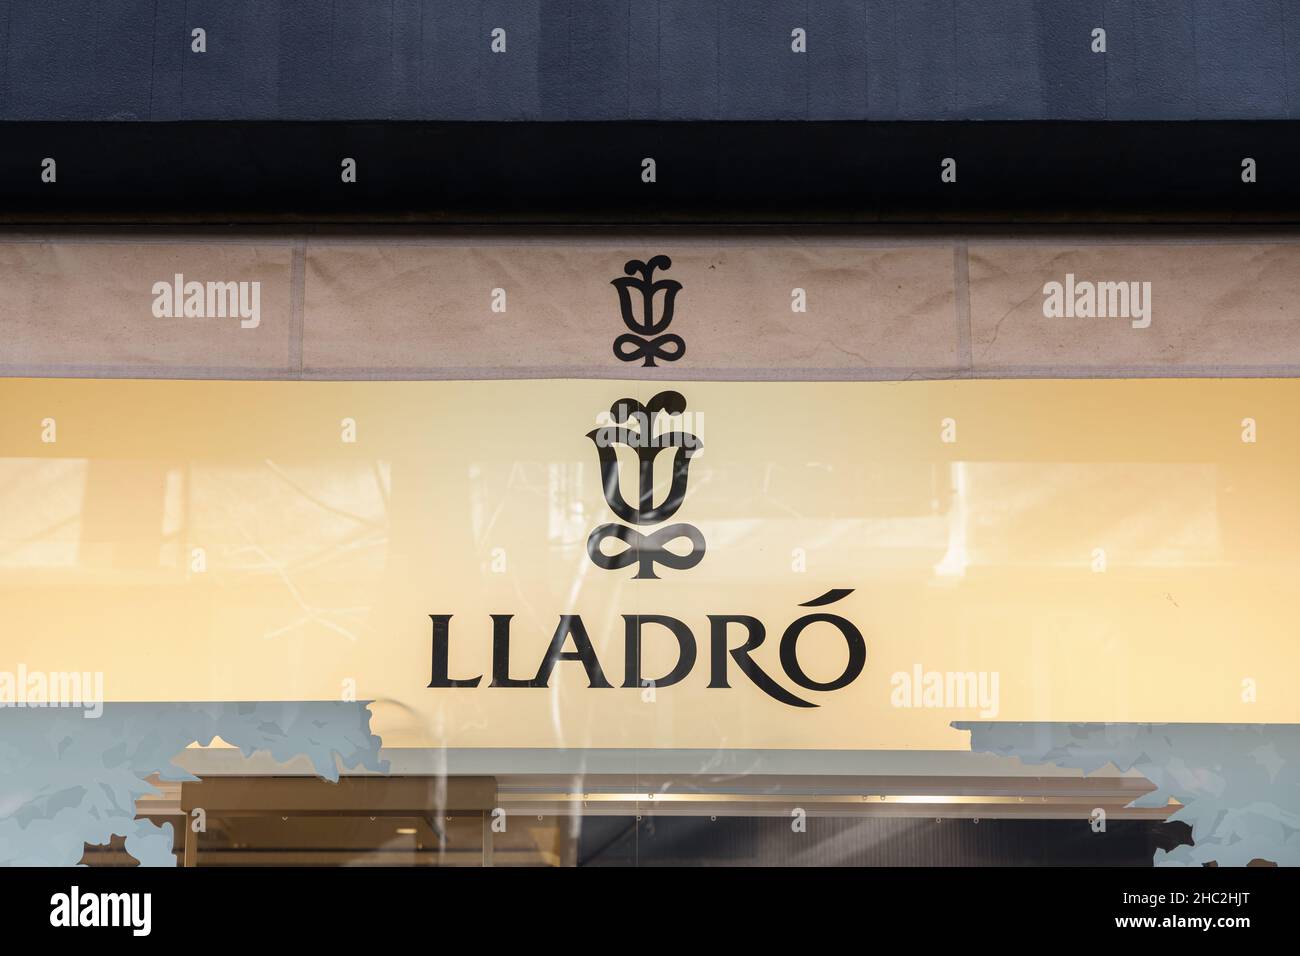 VALENCIA, SPANIEN - 15. DEZEMBER 2021: Lladro ist ein spanisches Unternehmen, das dekorative Skulpturen und Porzellanfiguren herstellt Stockfoto